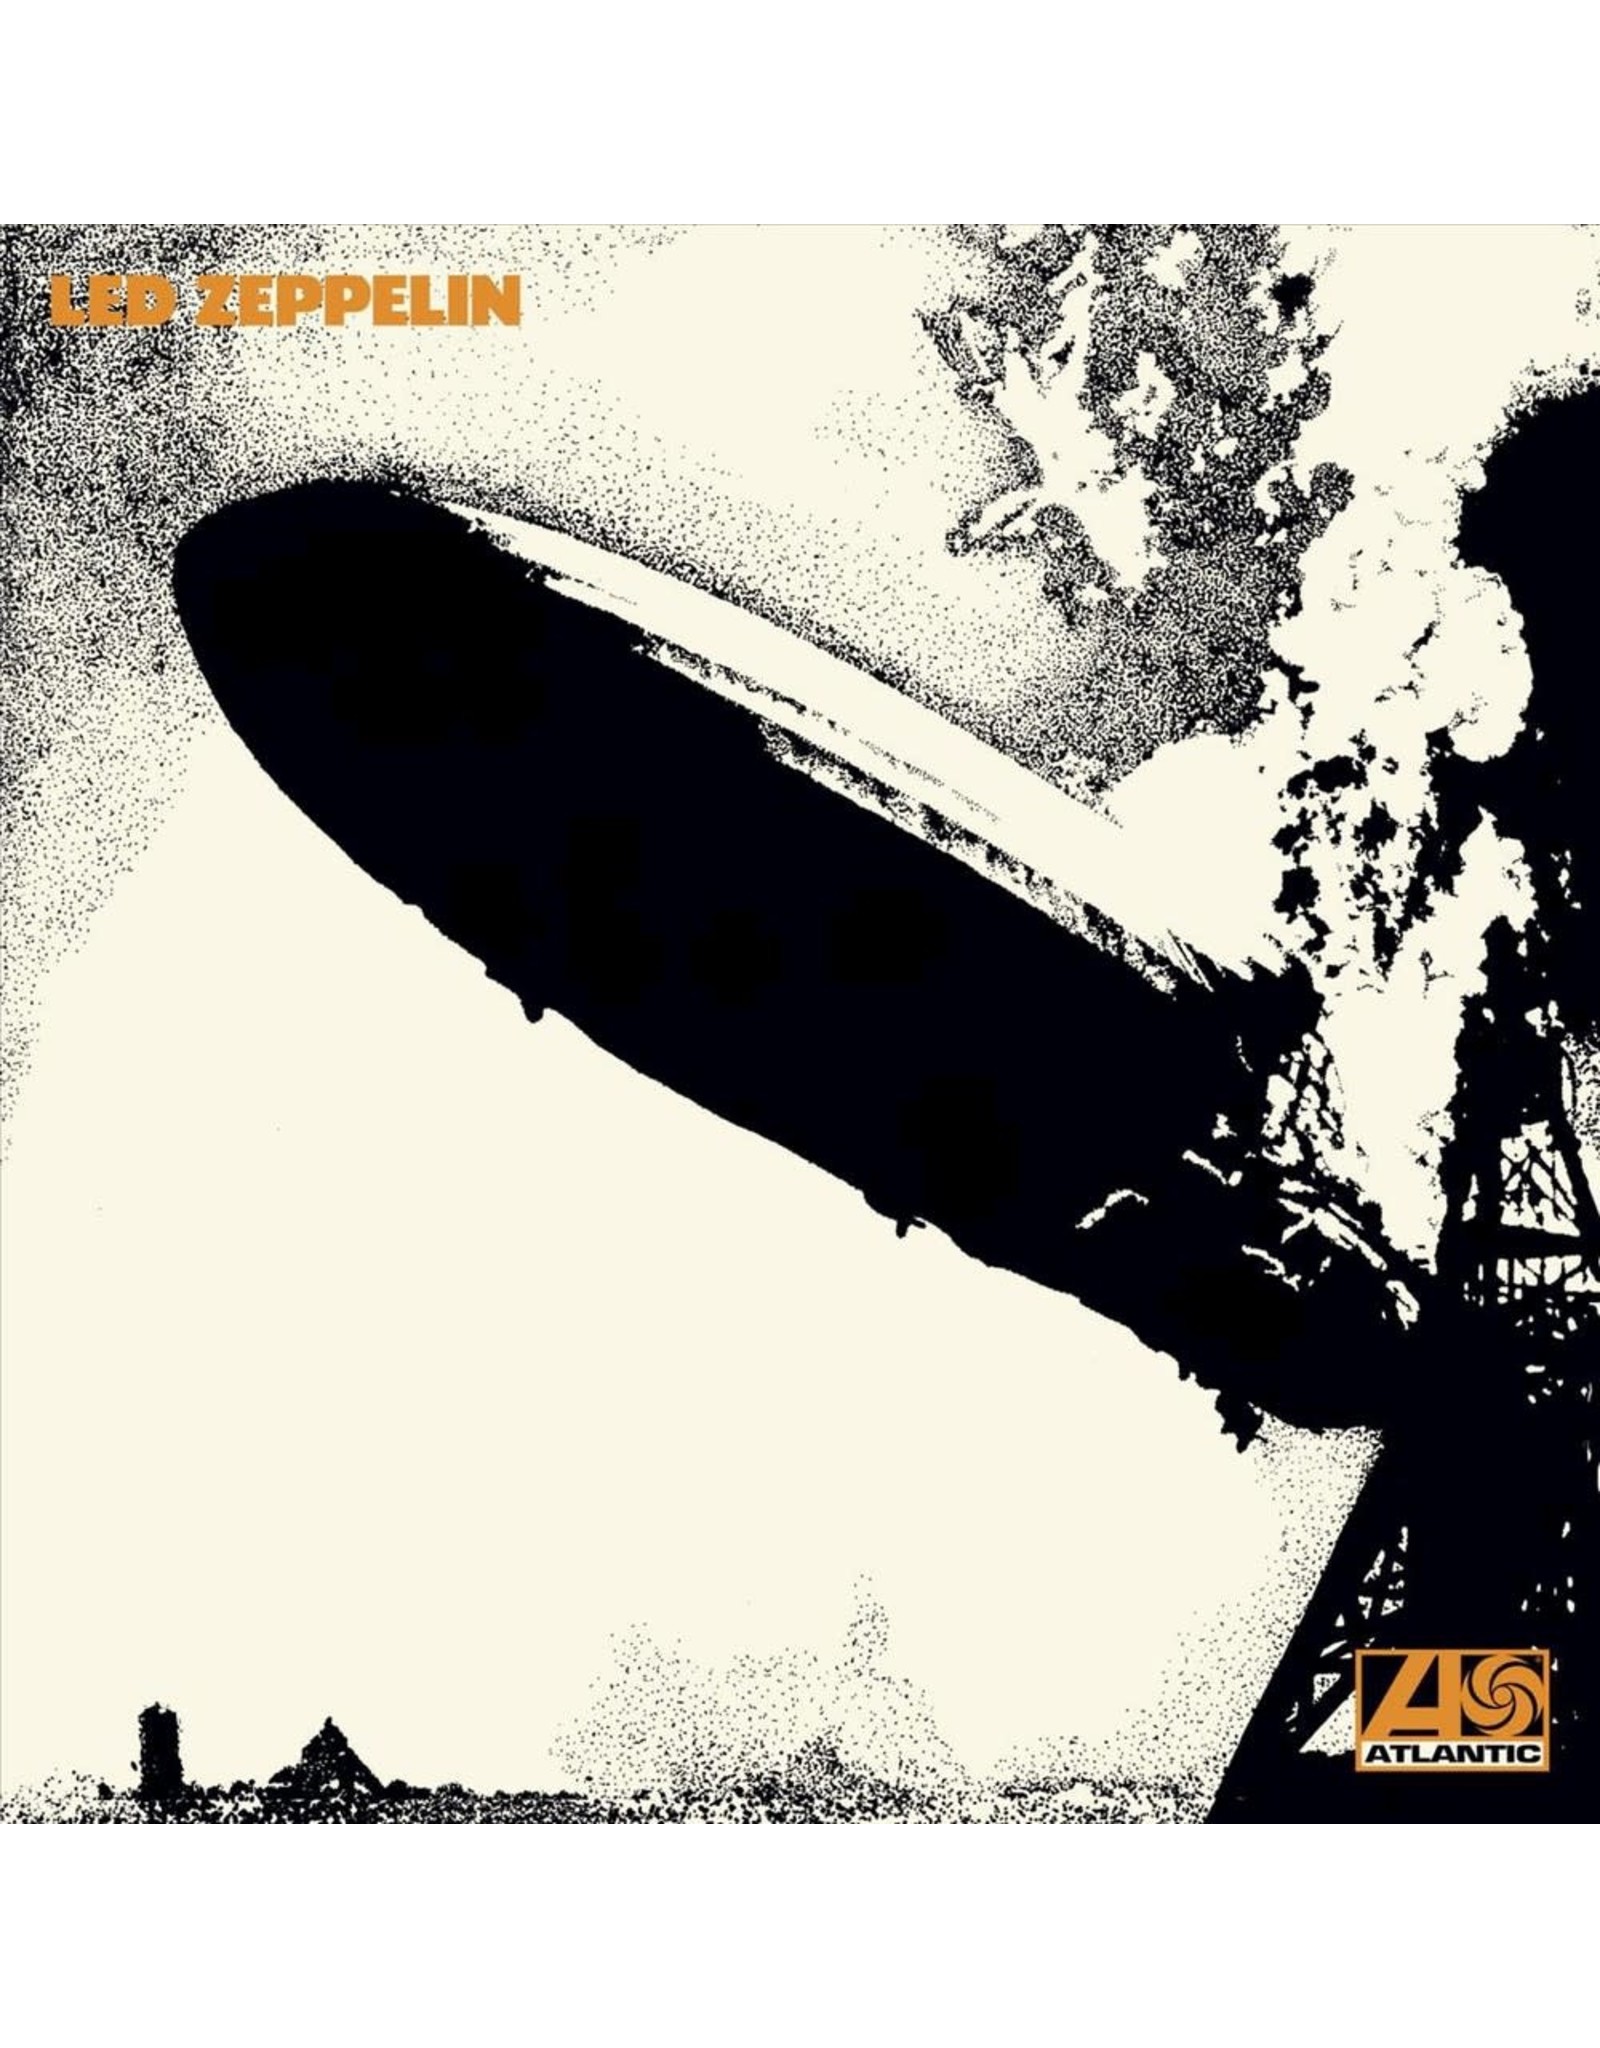 Led Zeppelin - I (RM) CD